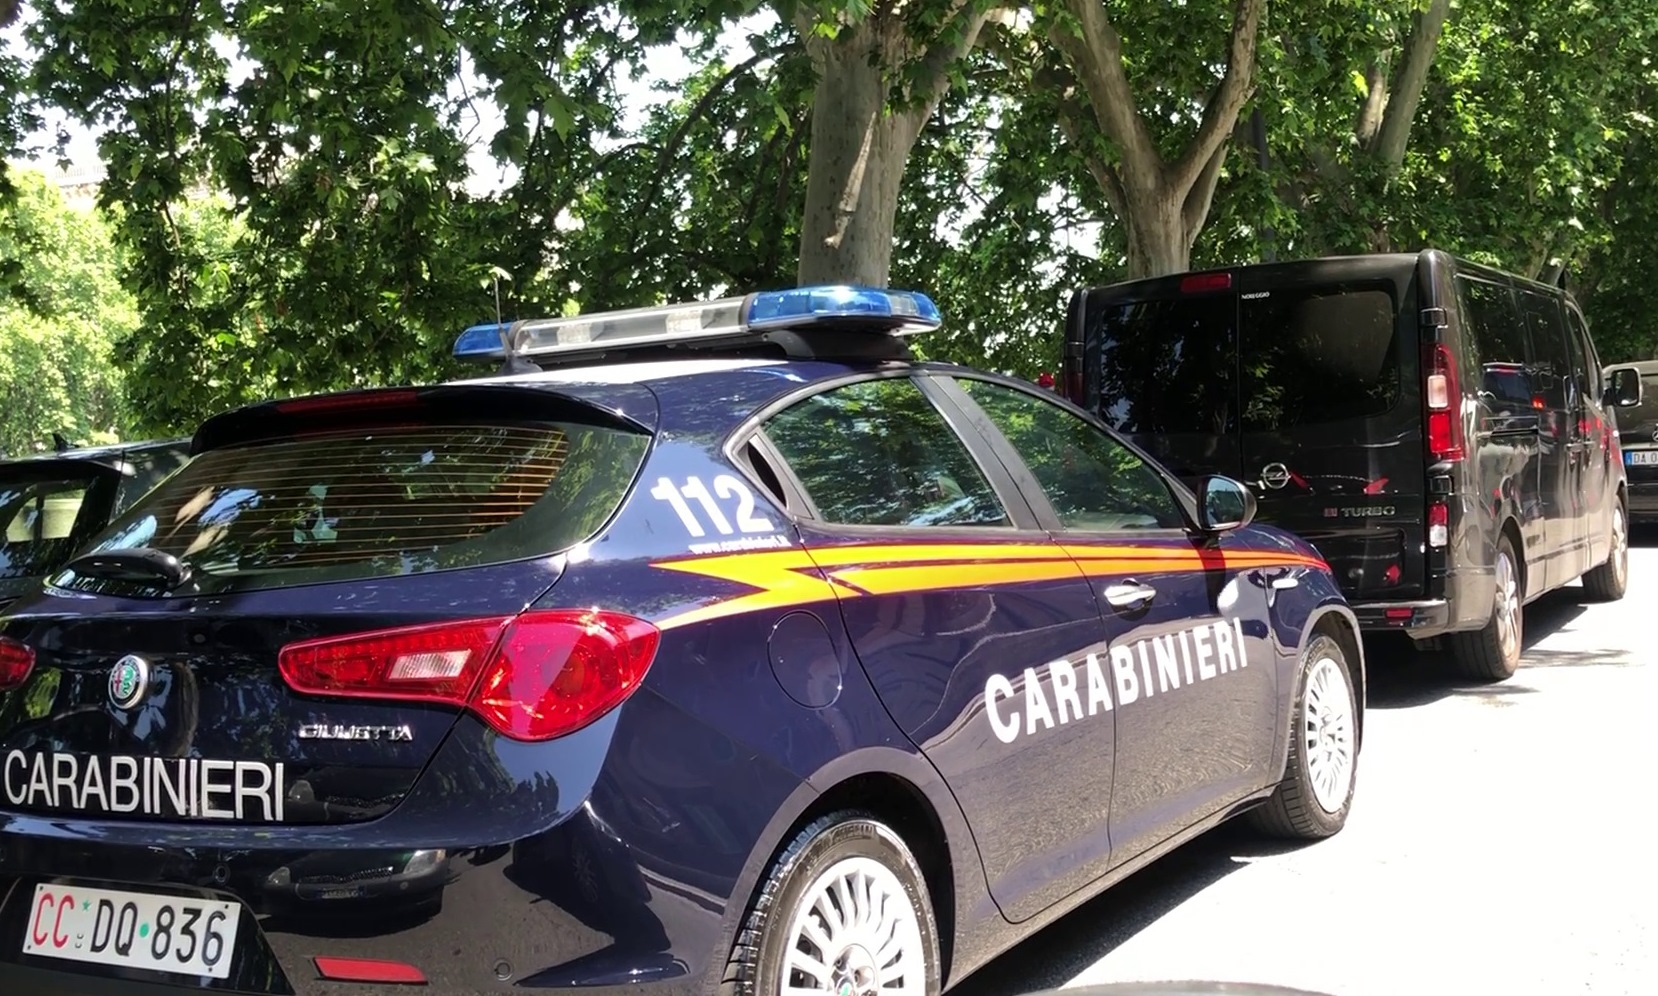 Tre cittadini cileni in manette per furto aggravato - Radio Roma Capitale